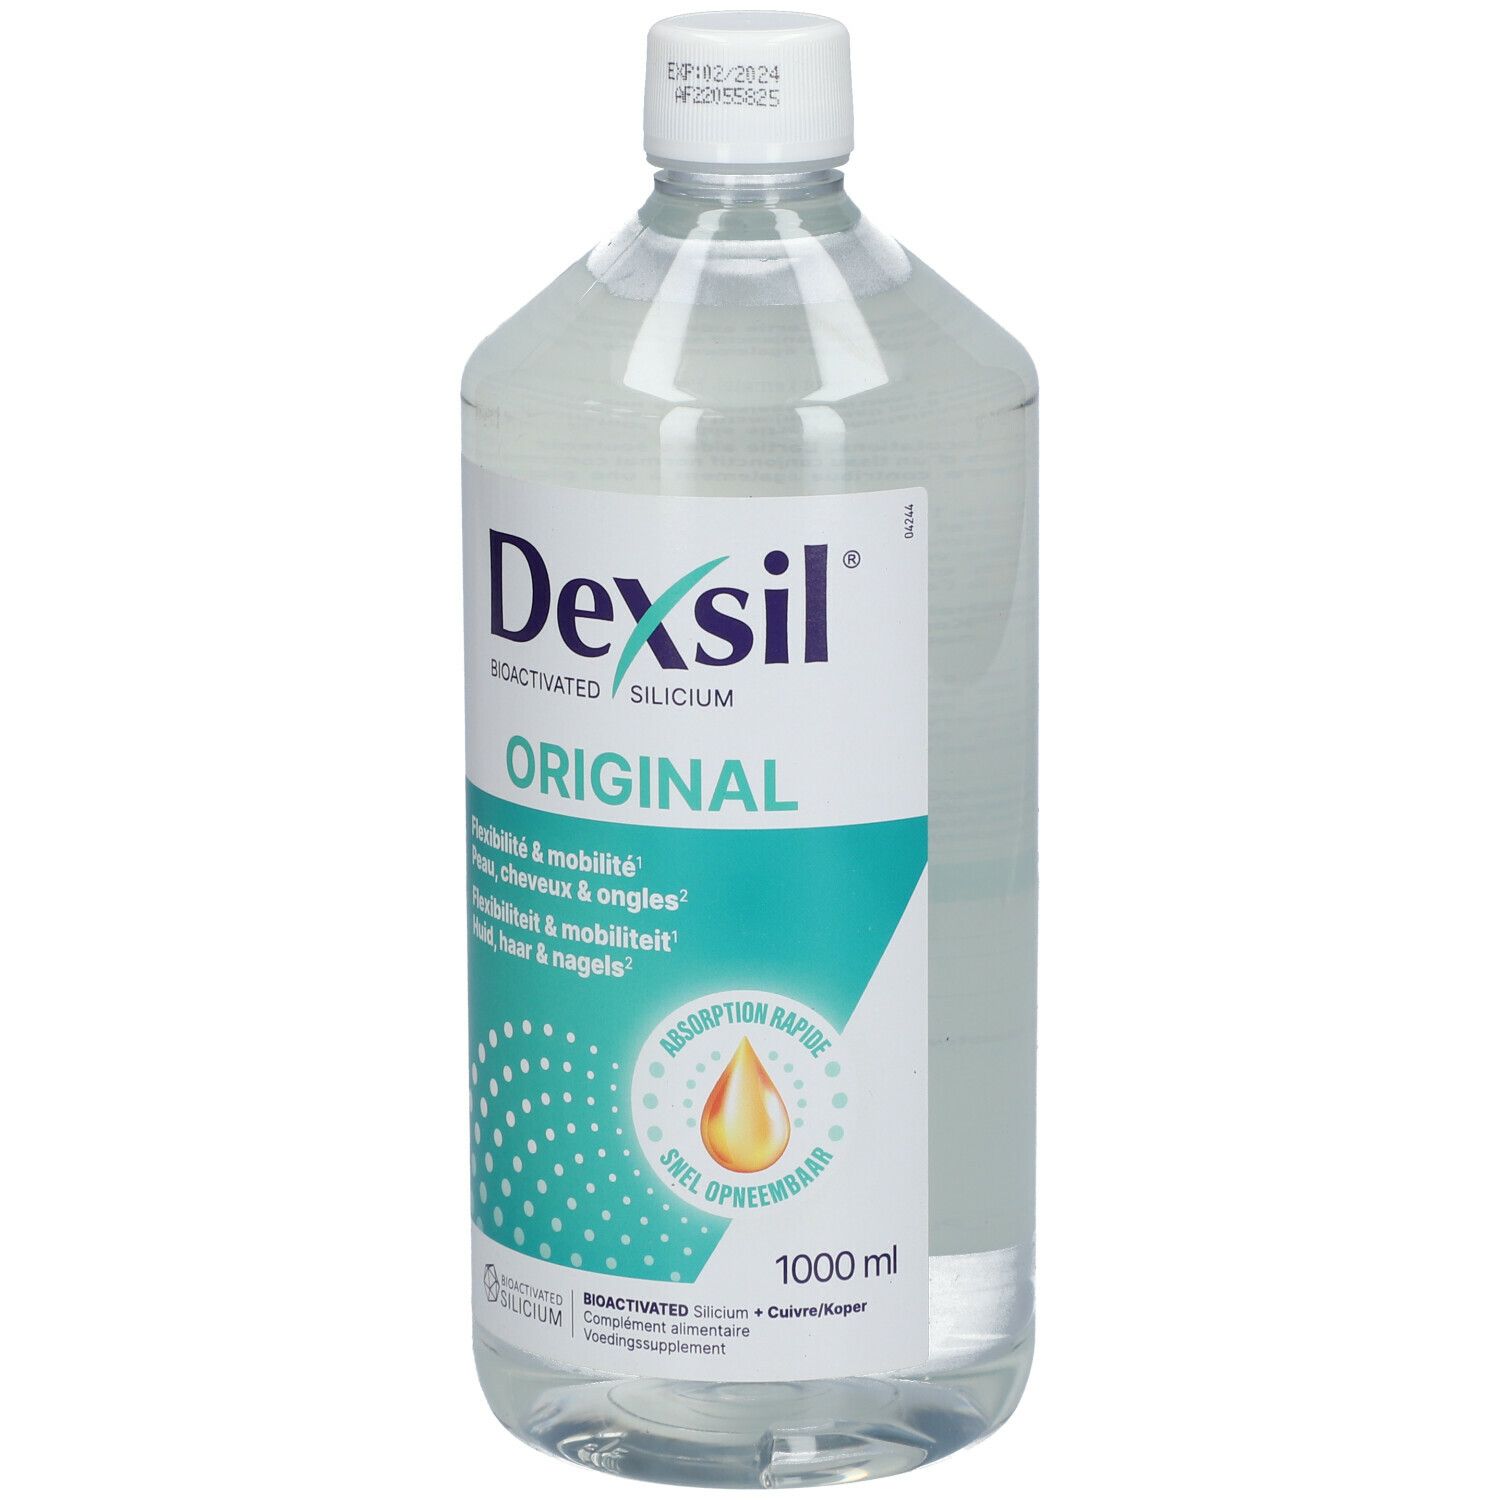 DexSil Organic Silicium Bio-activated